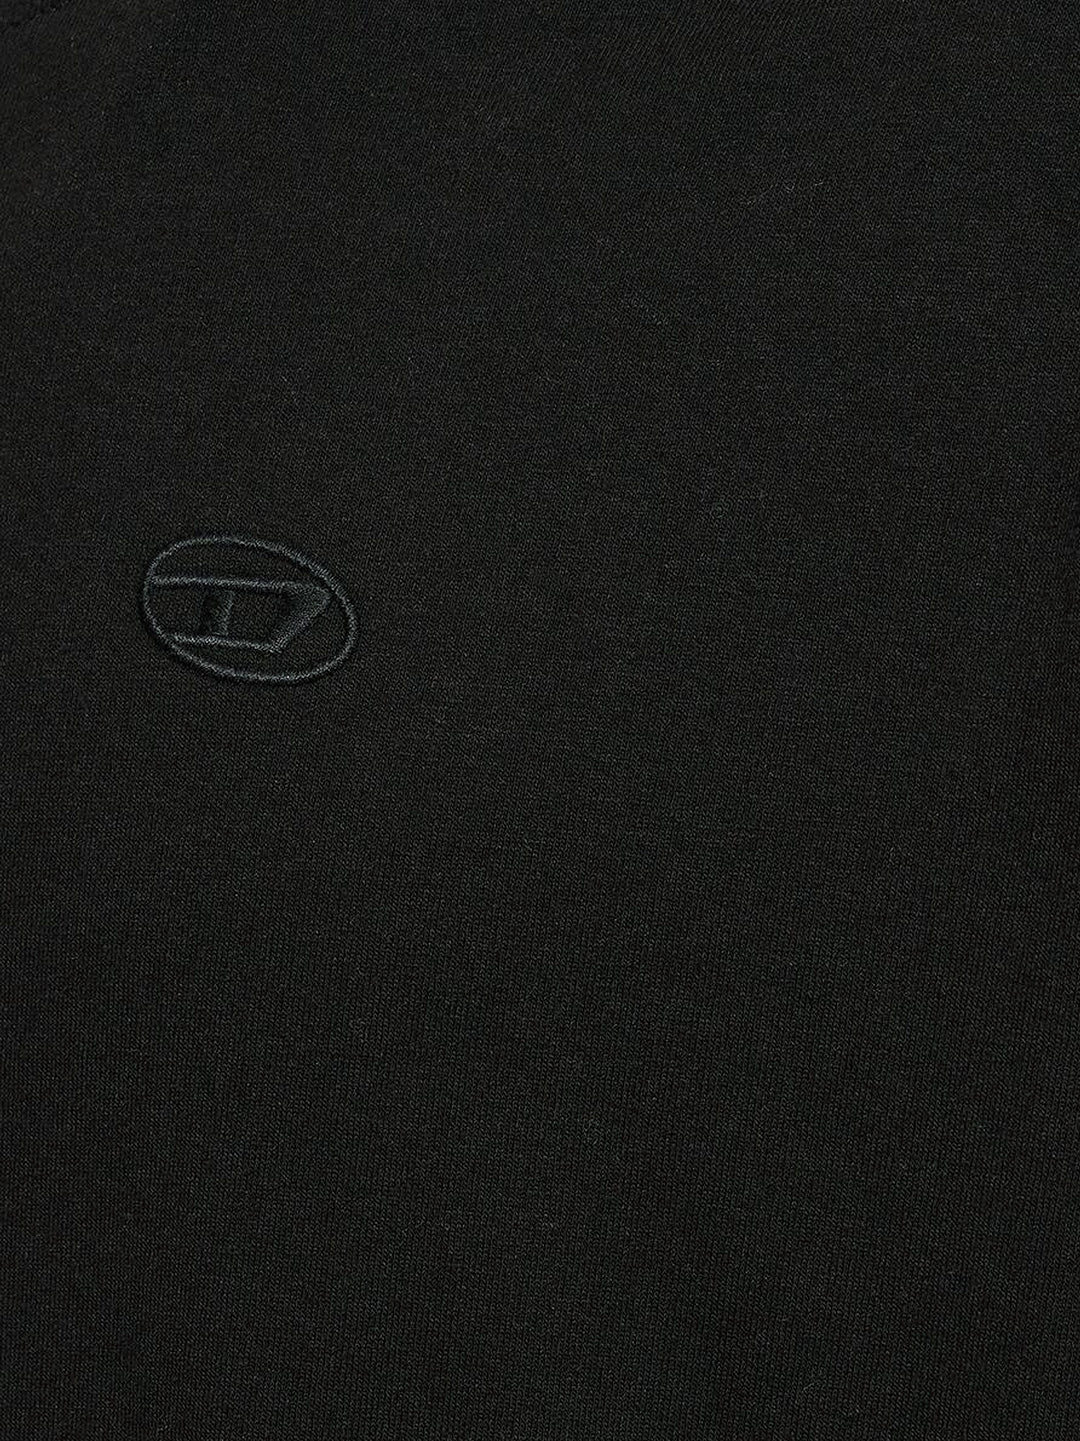 T-shirt in cotone con logo Oval-D posteriore